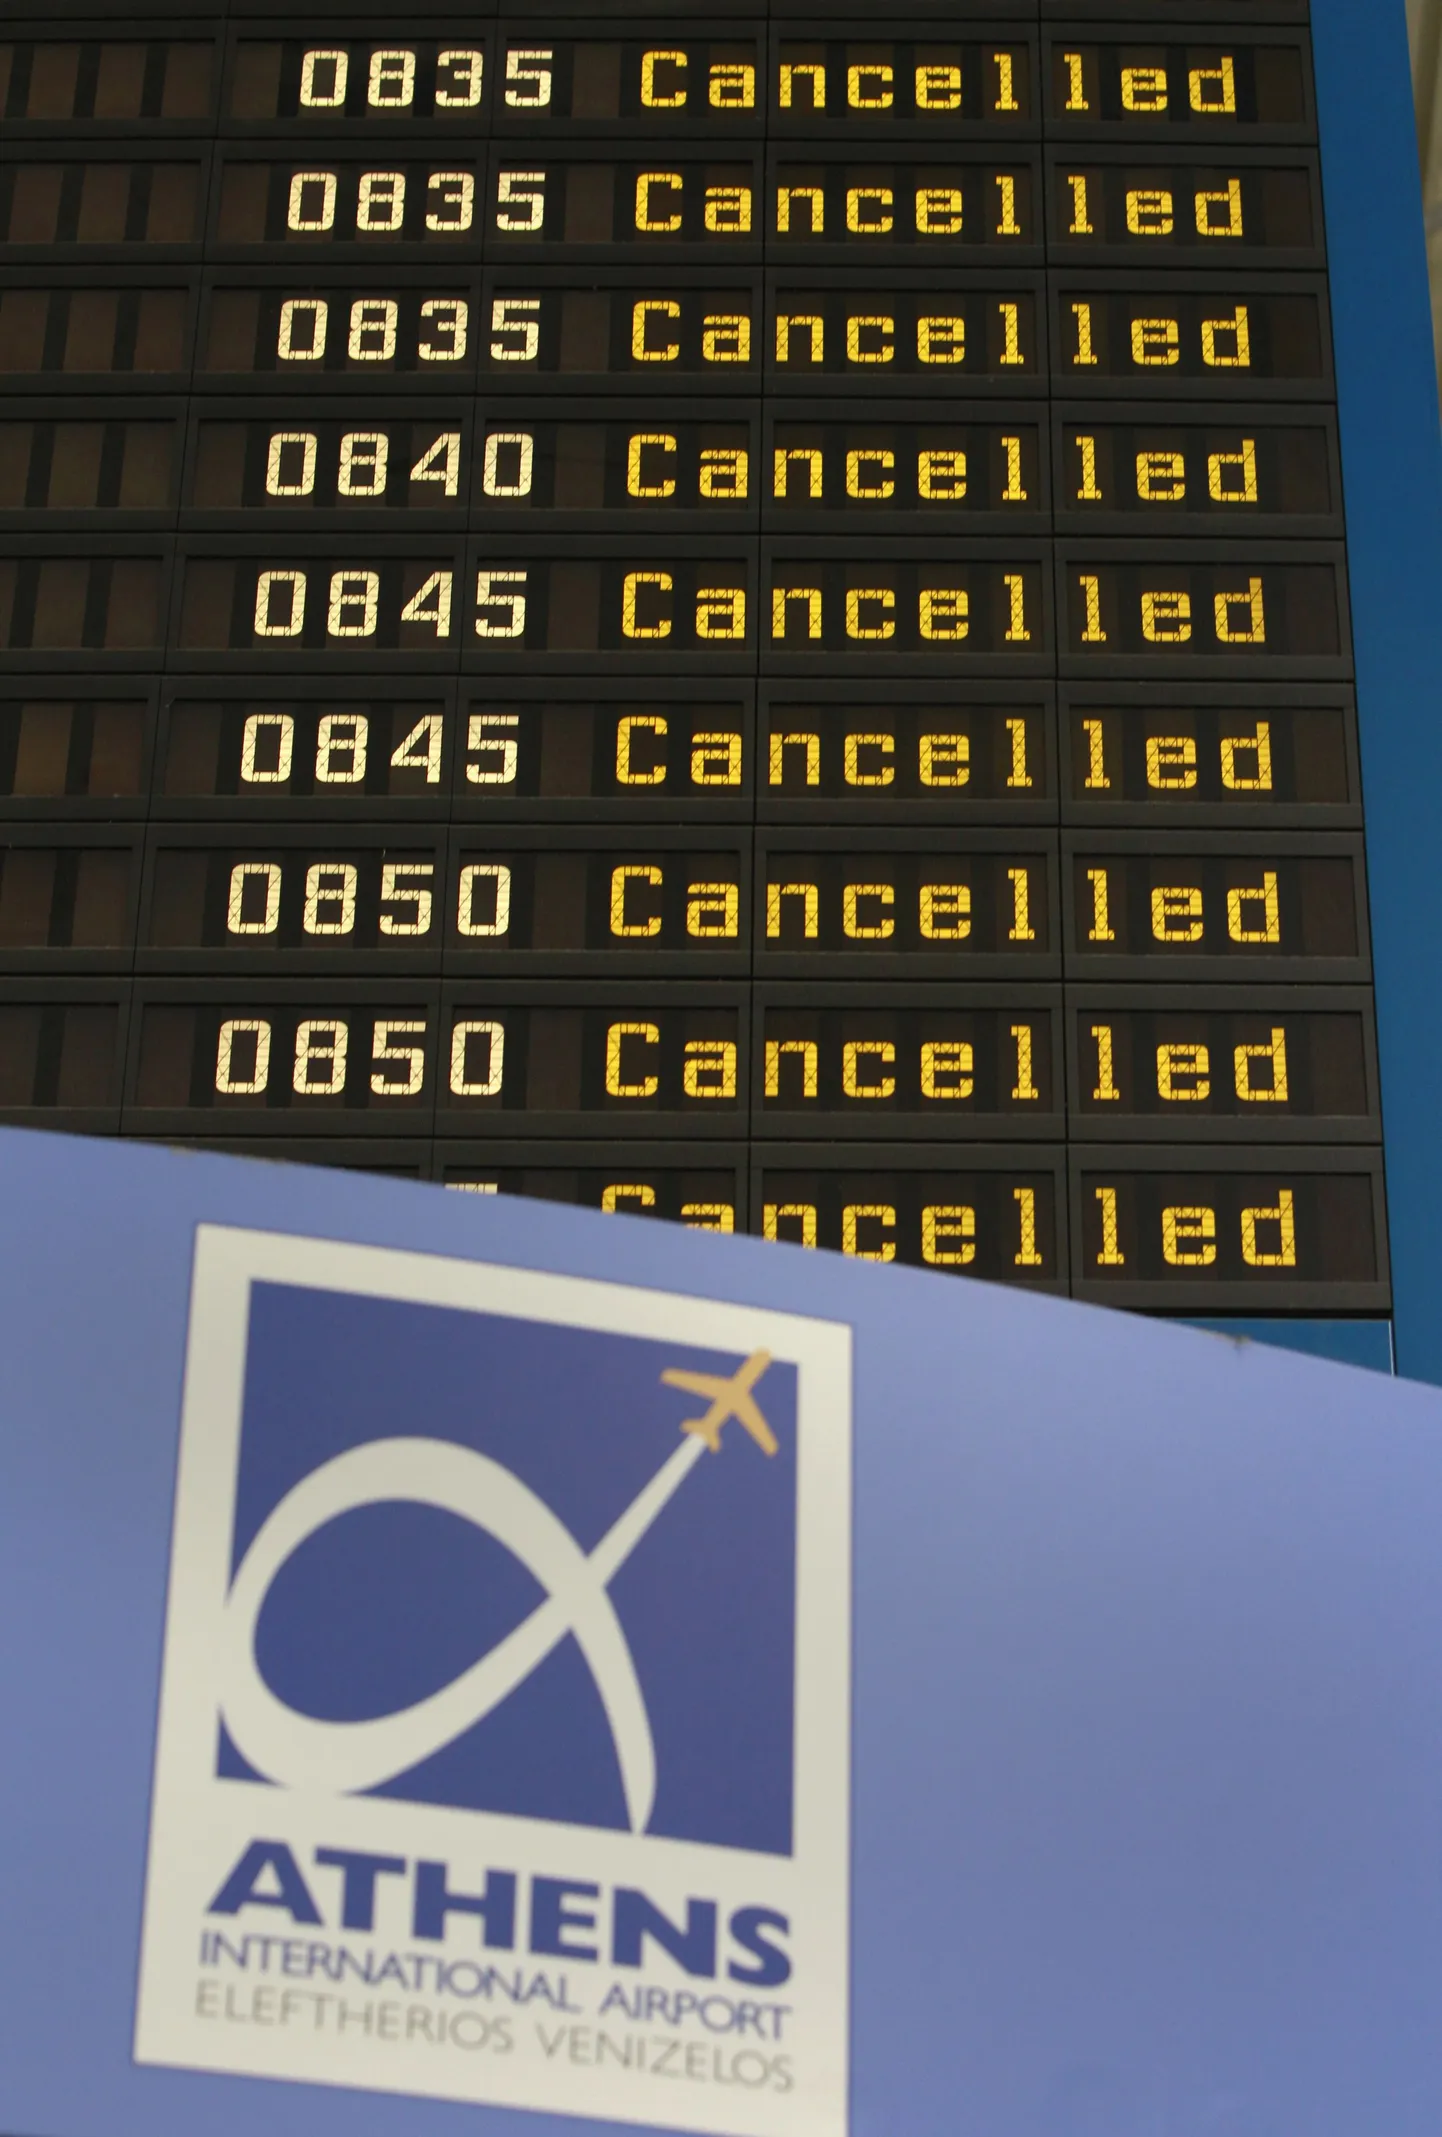 Ateena lennuvälja infotahvel näitab, et kõik lennud on tühistatud.